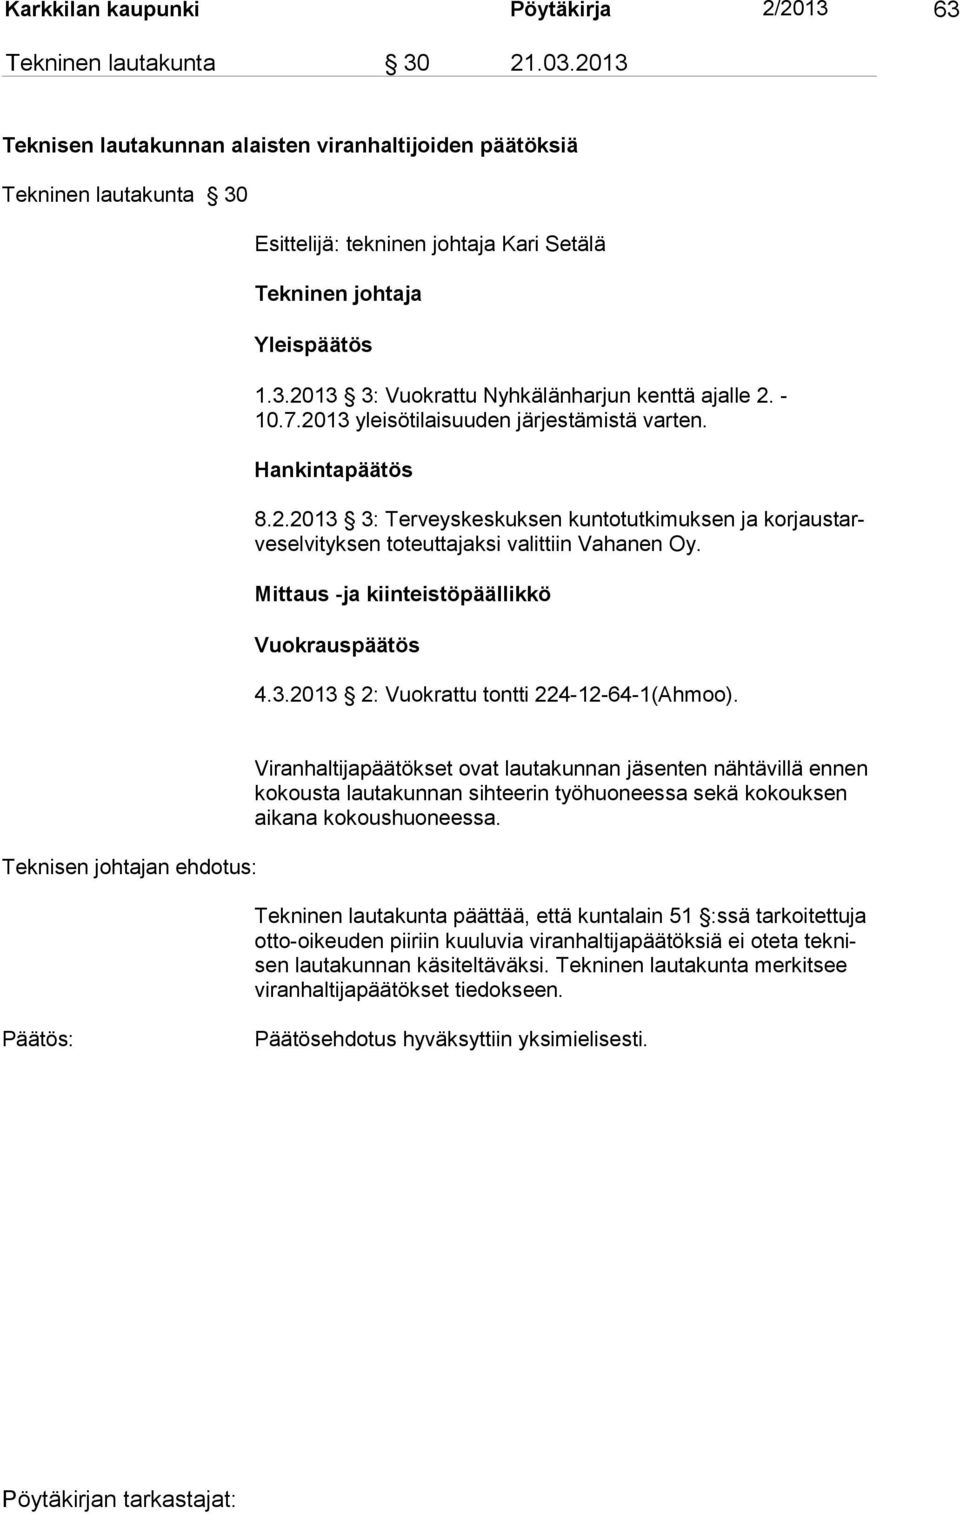 - 10.7.2013 yleisötilaisuuden järjes tämistä varten. Hankintapäätös 8.2.2013 3: Terveyskeskuksen kuntotutkimuksen ja korjaustarveselvityksen toteuttajaksi valittiin Vahanen Oy.